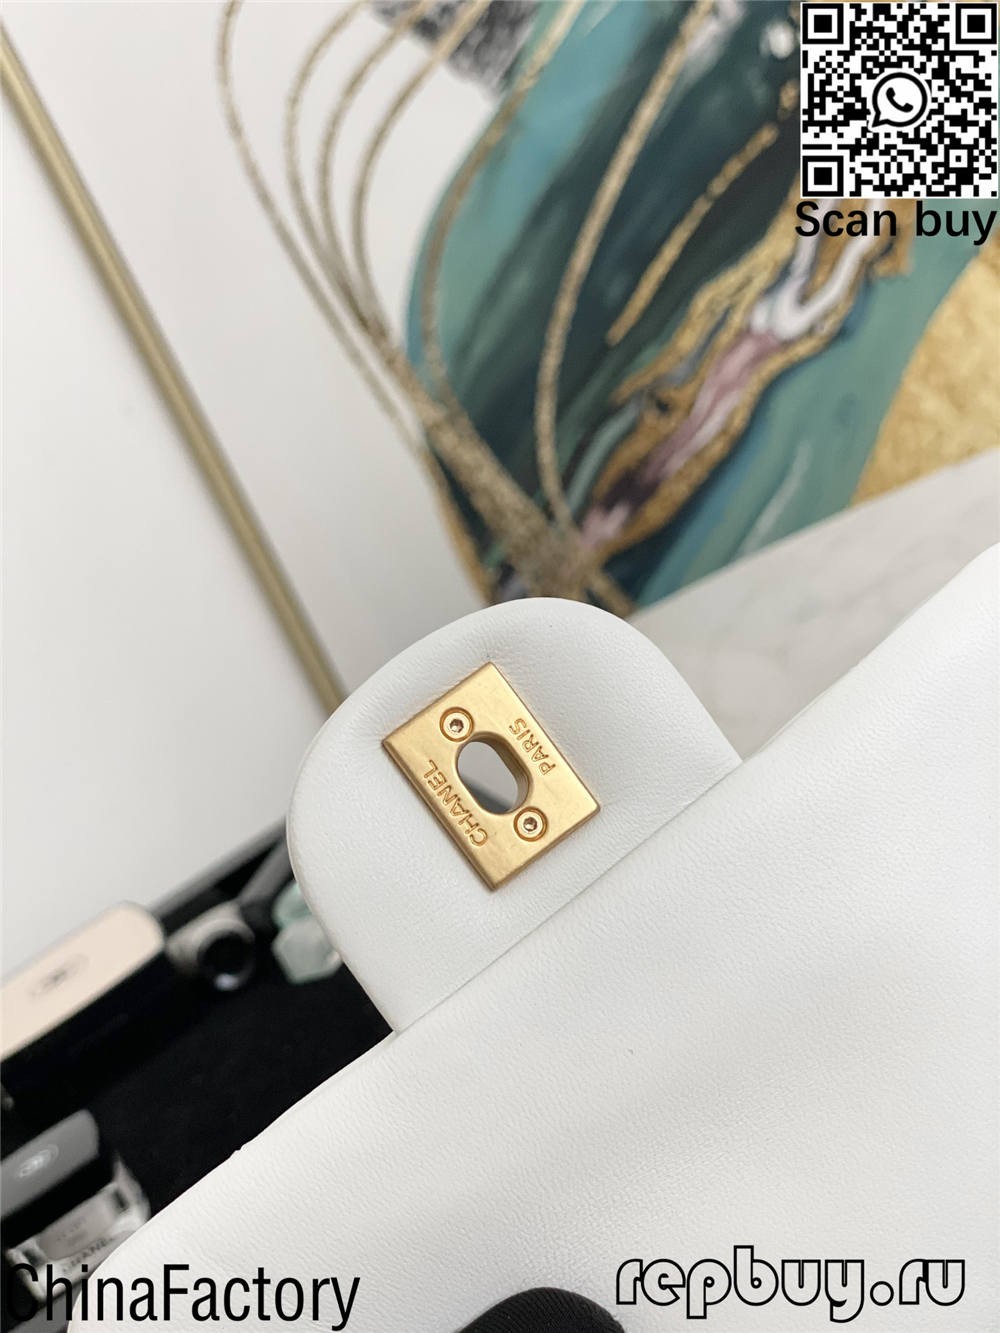 I-Chanel top 12 replica izikhwama ongazithenga (2022 zibuyekeziwe)-Ikhwalithi Engcono Kakhulu I-Fake Louis Vuitton Bag Online Store, i-Replica designer bag ru